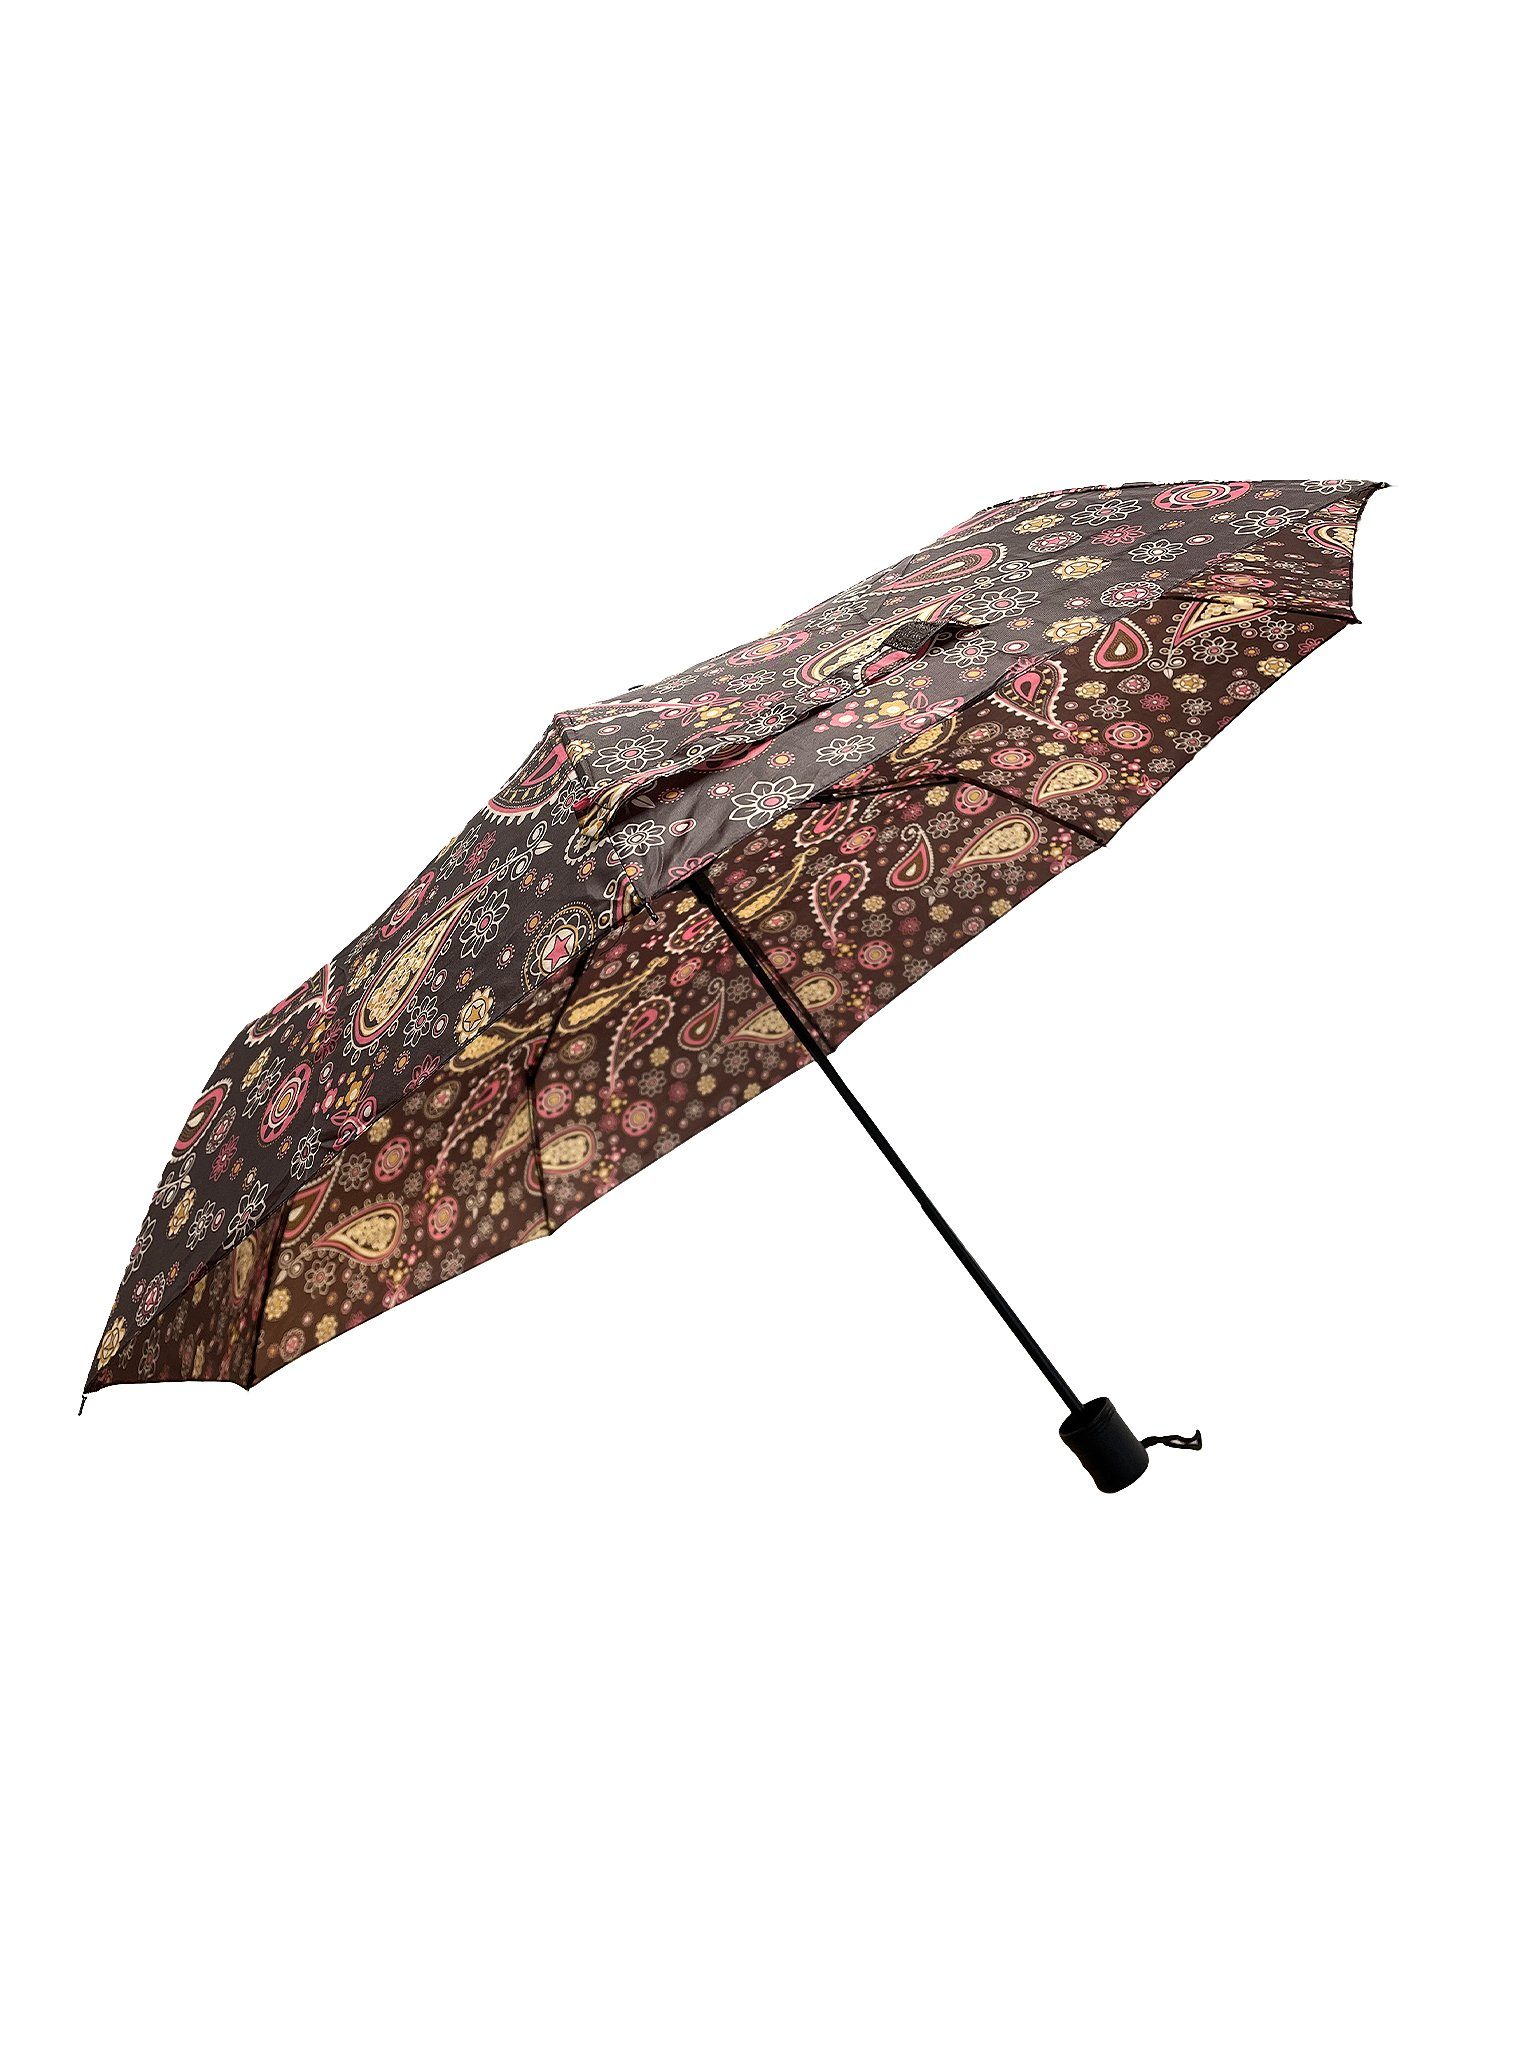 ANELY in Regenschirm Braun Kleiner Paris Gemustert Taschenschirm, Taschenregenschirm 6746